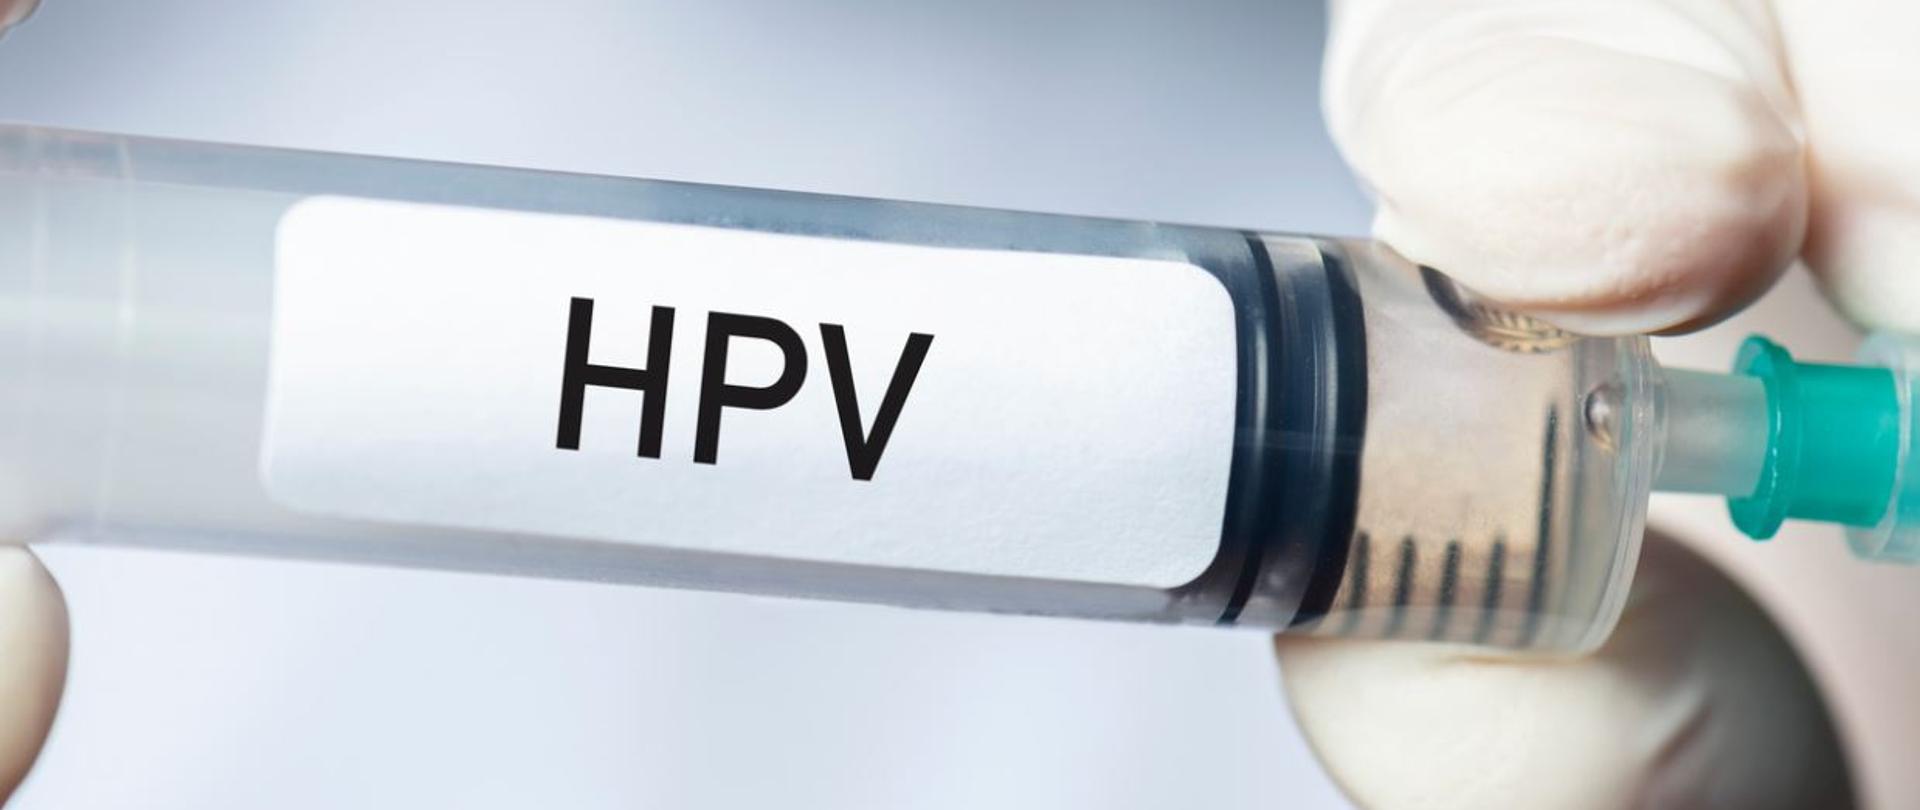 Trzymana w dłoniach strzykawka, na której napisane jest: HPV.